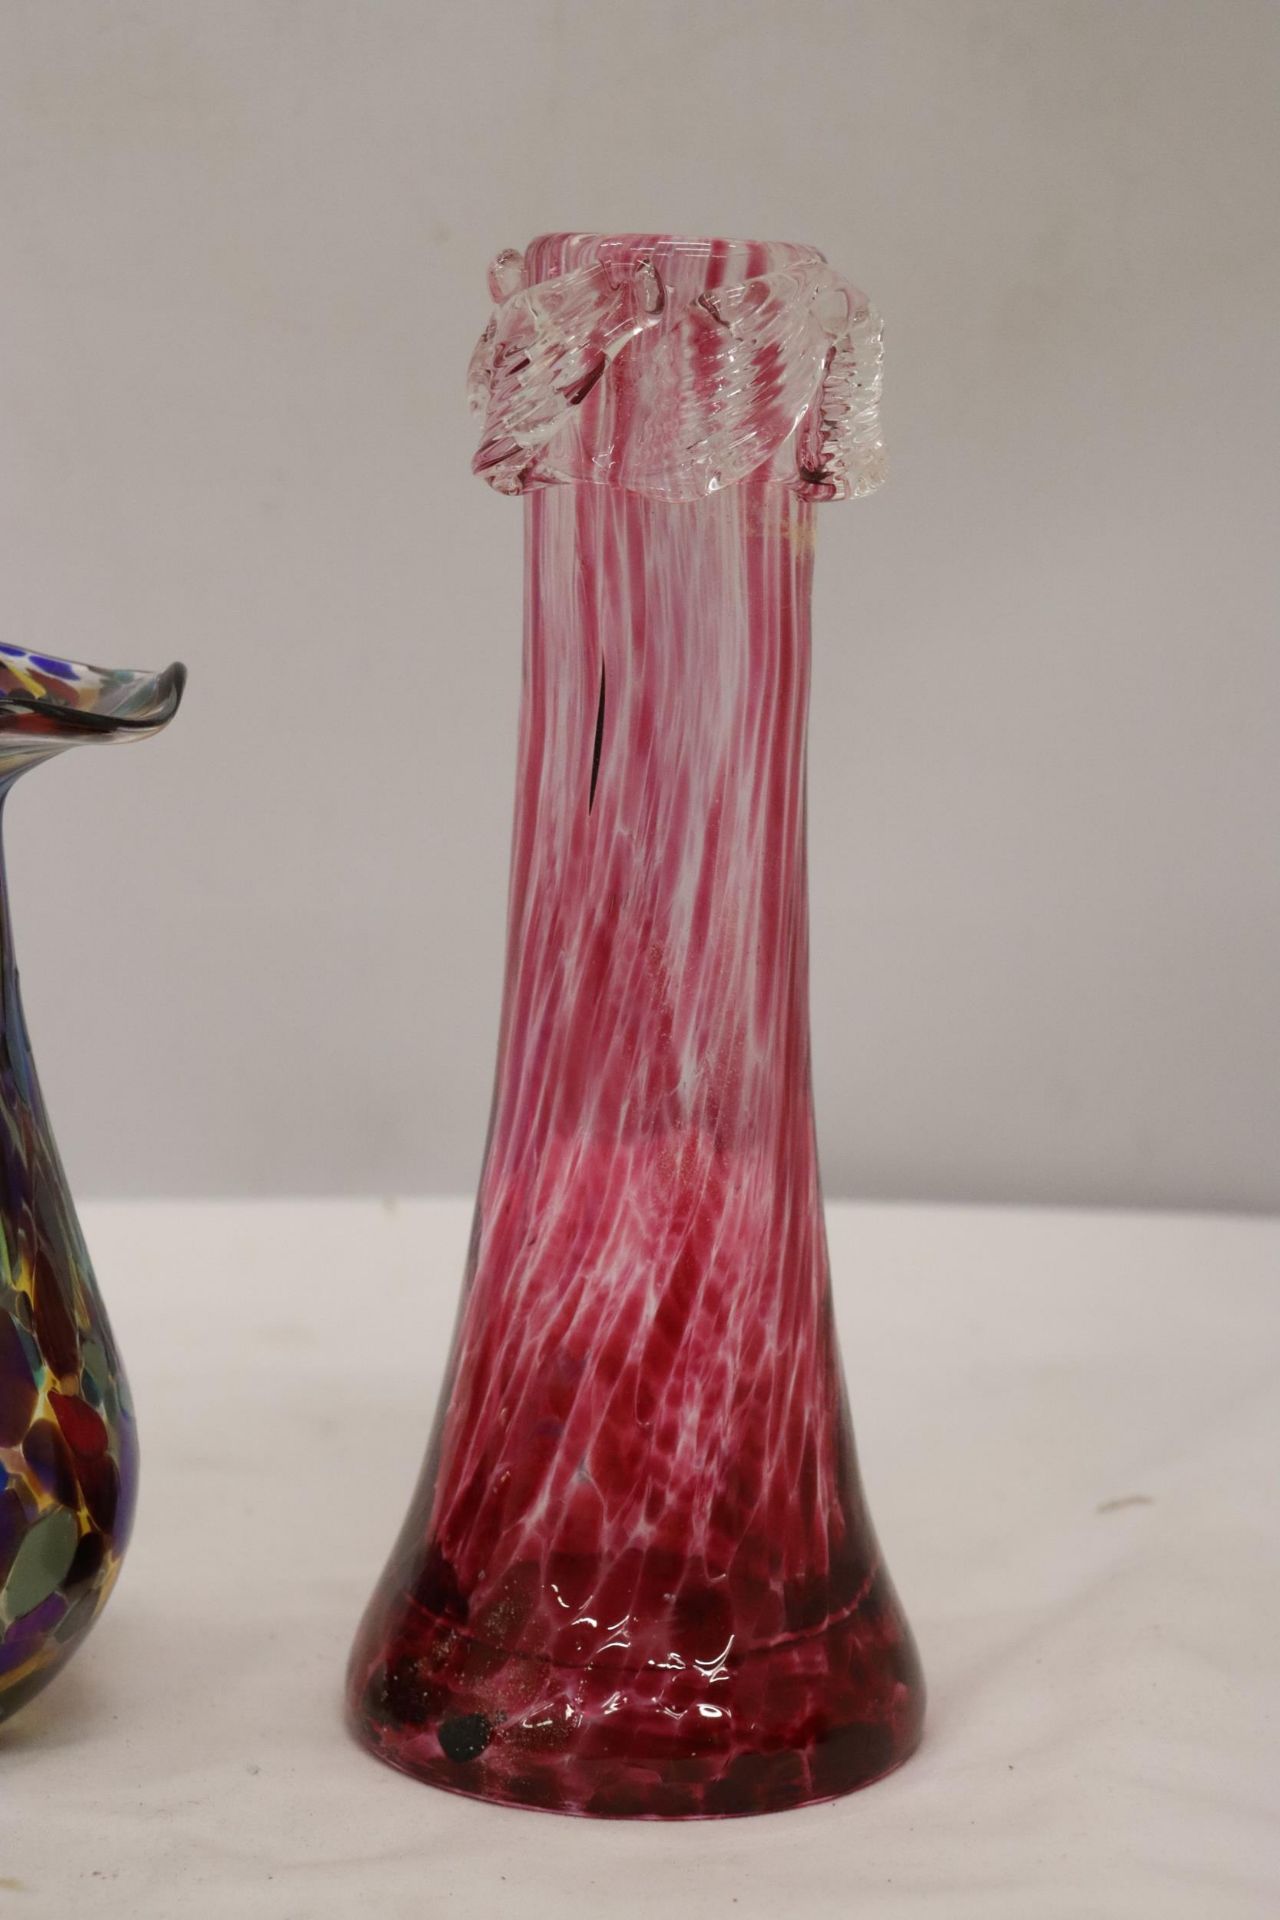 TWO PIECES OF VINTAGE CRANBERRY GLASS BOWLS PLUS TWO ART GLASS VASES - Bild 6 aus 7